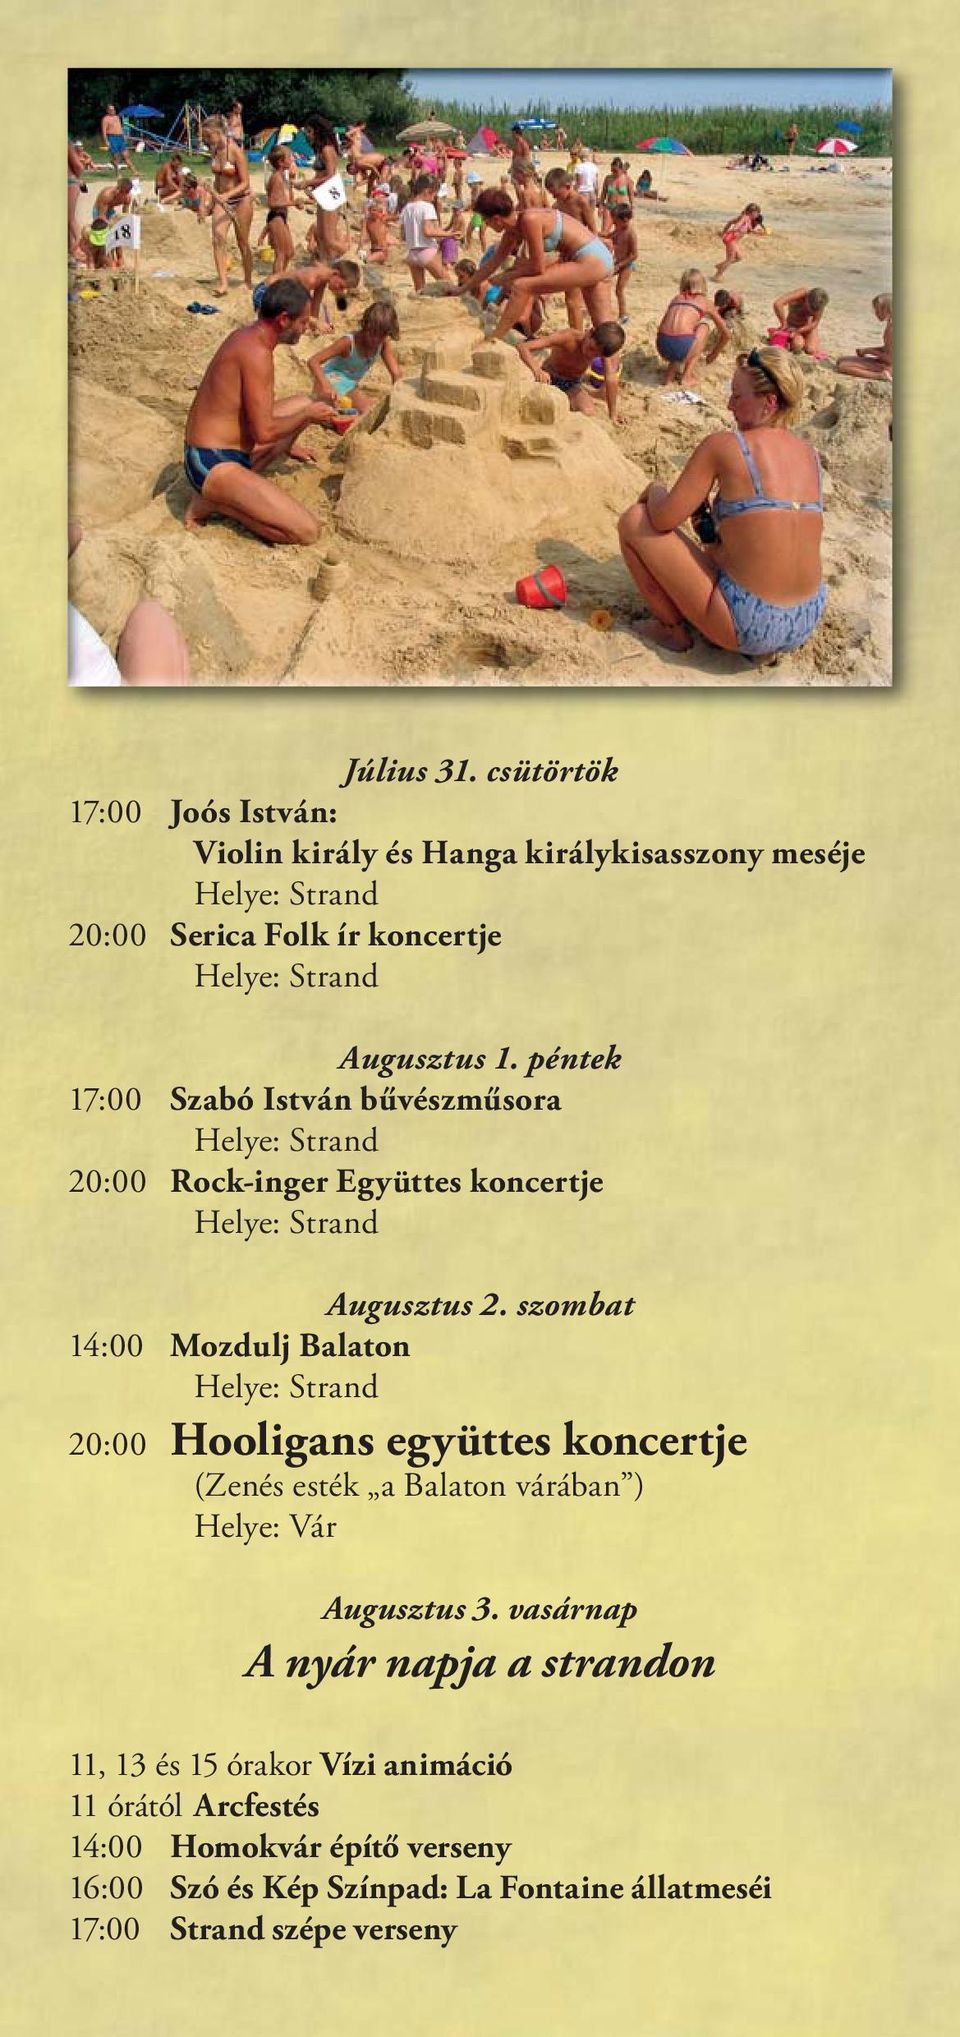 szombat 14:00 Mozdulj Balaton 20:00 Hooligans együttes koncertje (Zenés esték a Balaton várában ) Augusztus 3.